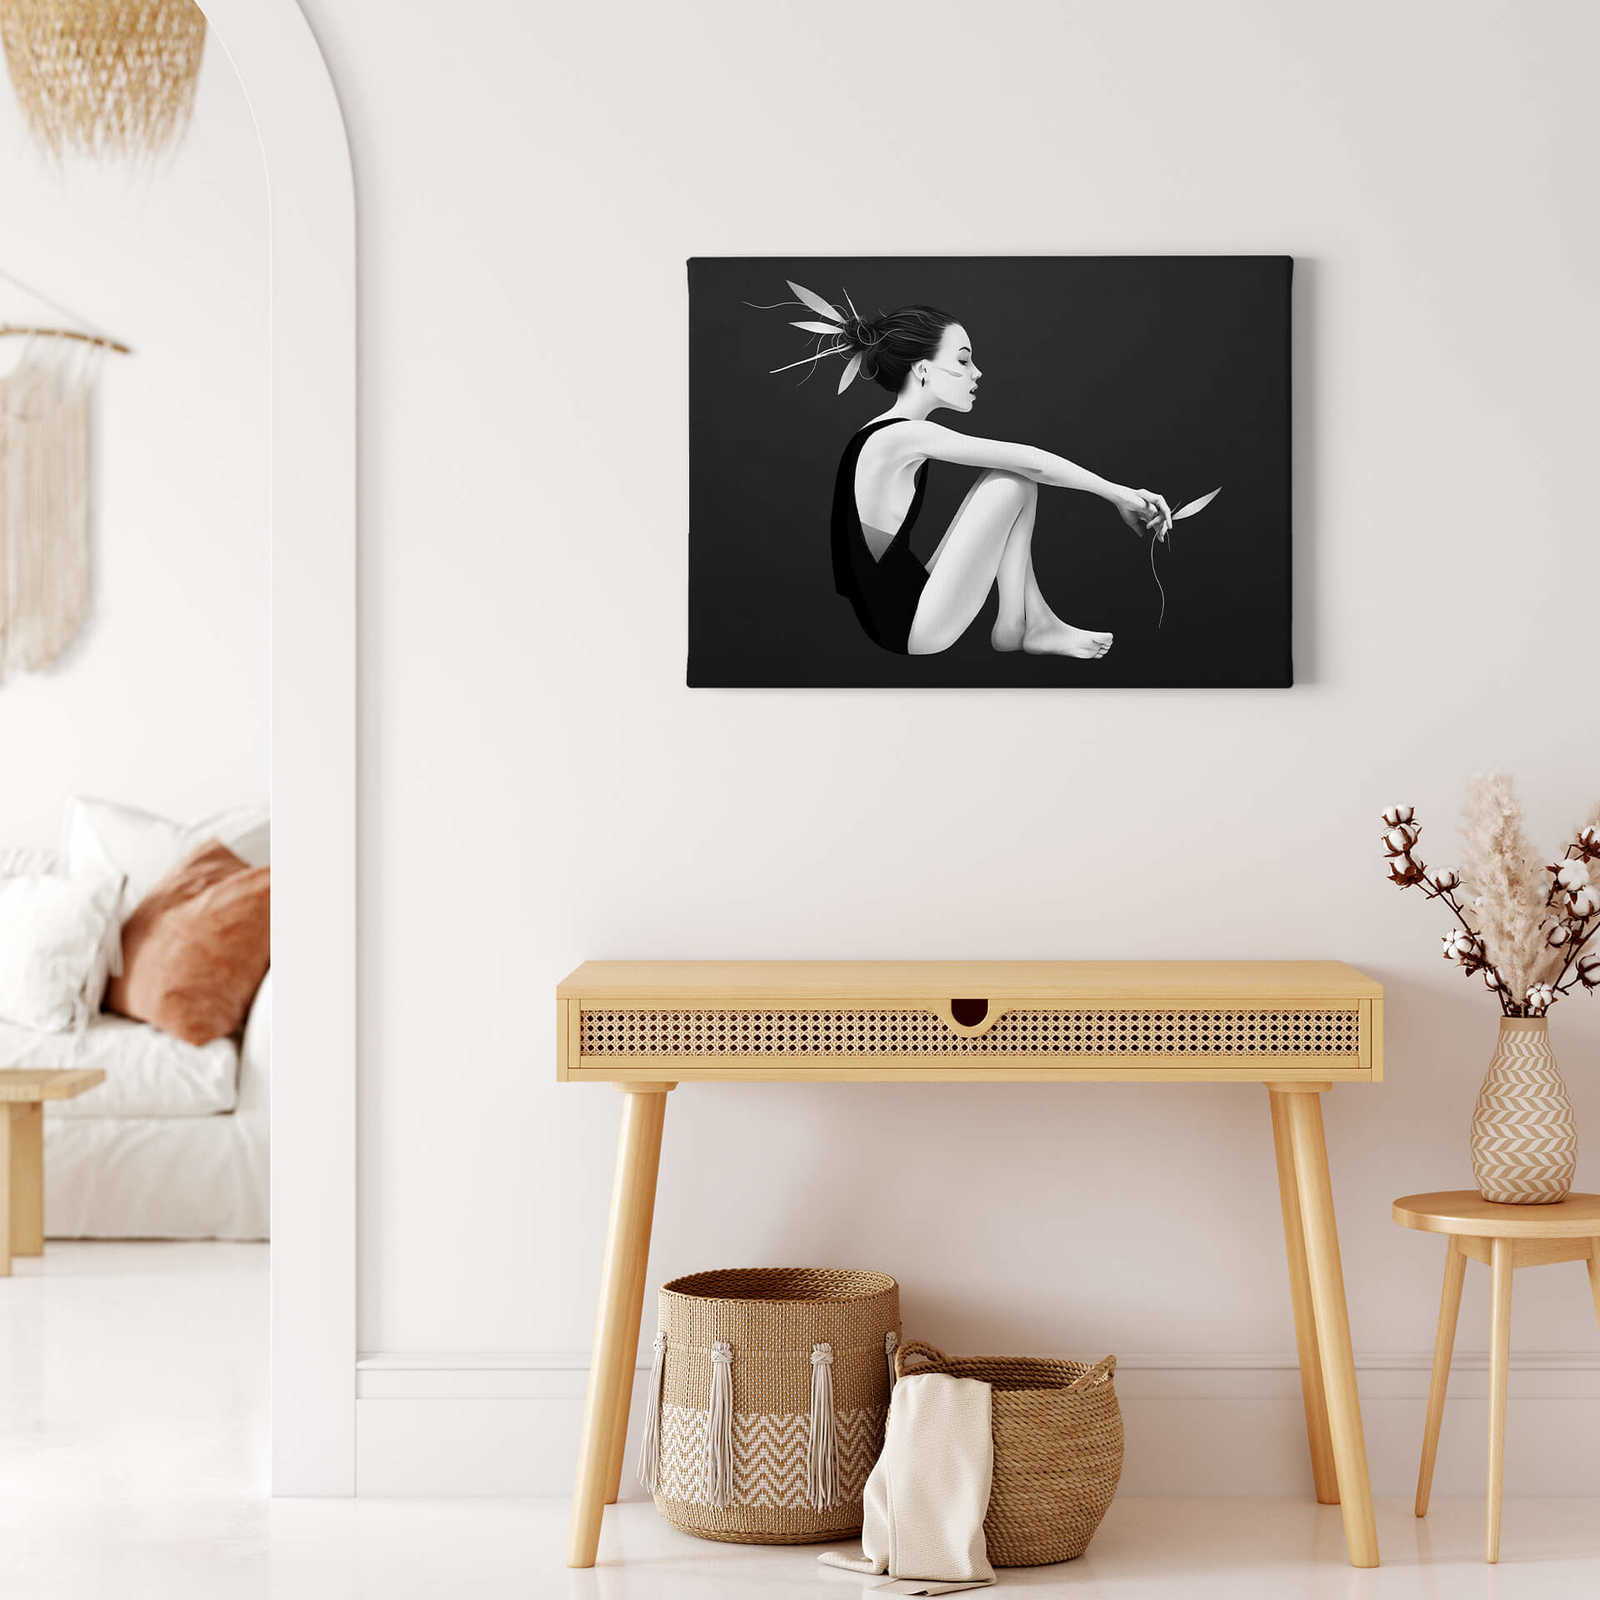             Zwart-wit canvas schilderij "Skyling" met vrouwfiguur - 0.70 m x 0.50 m
        